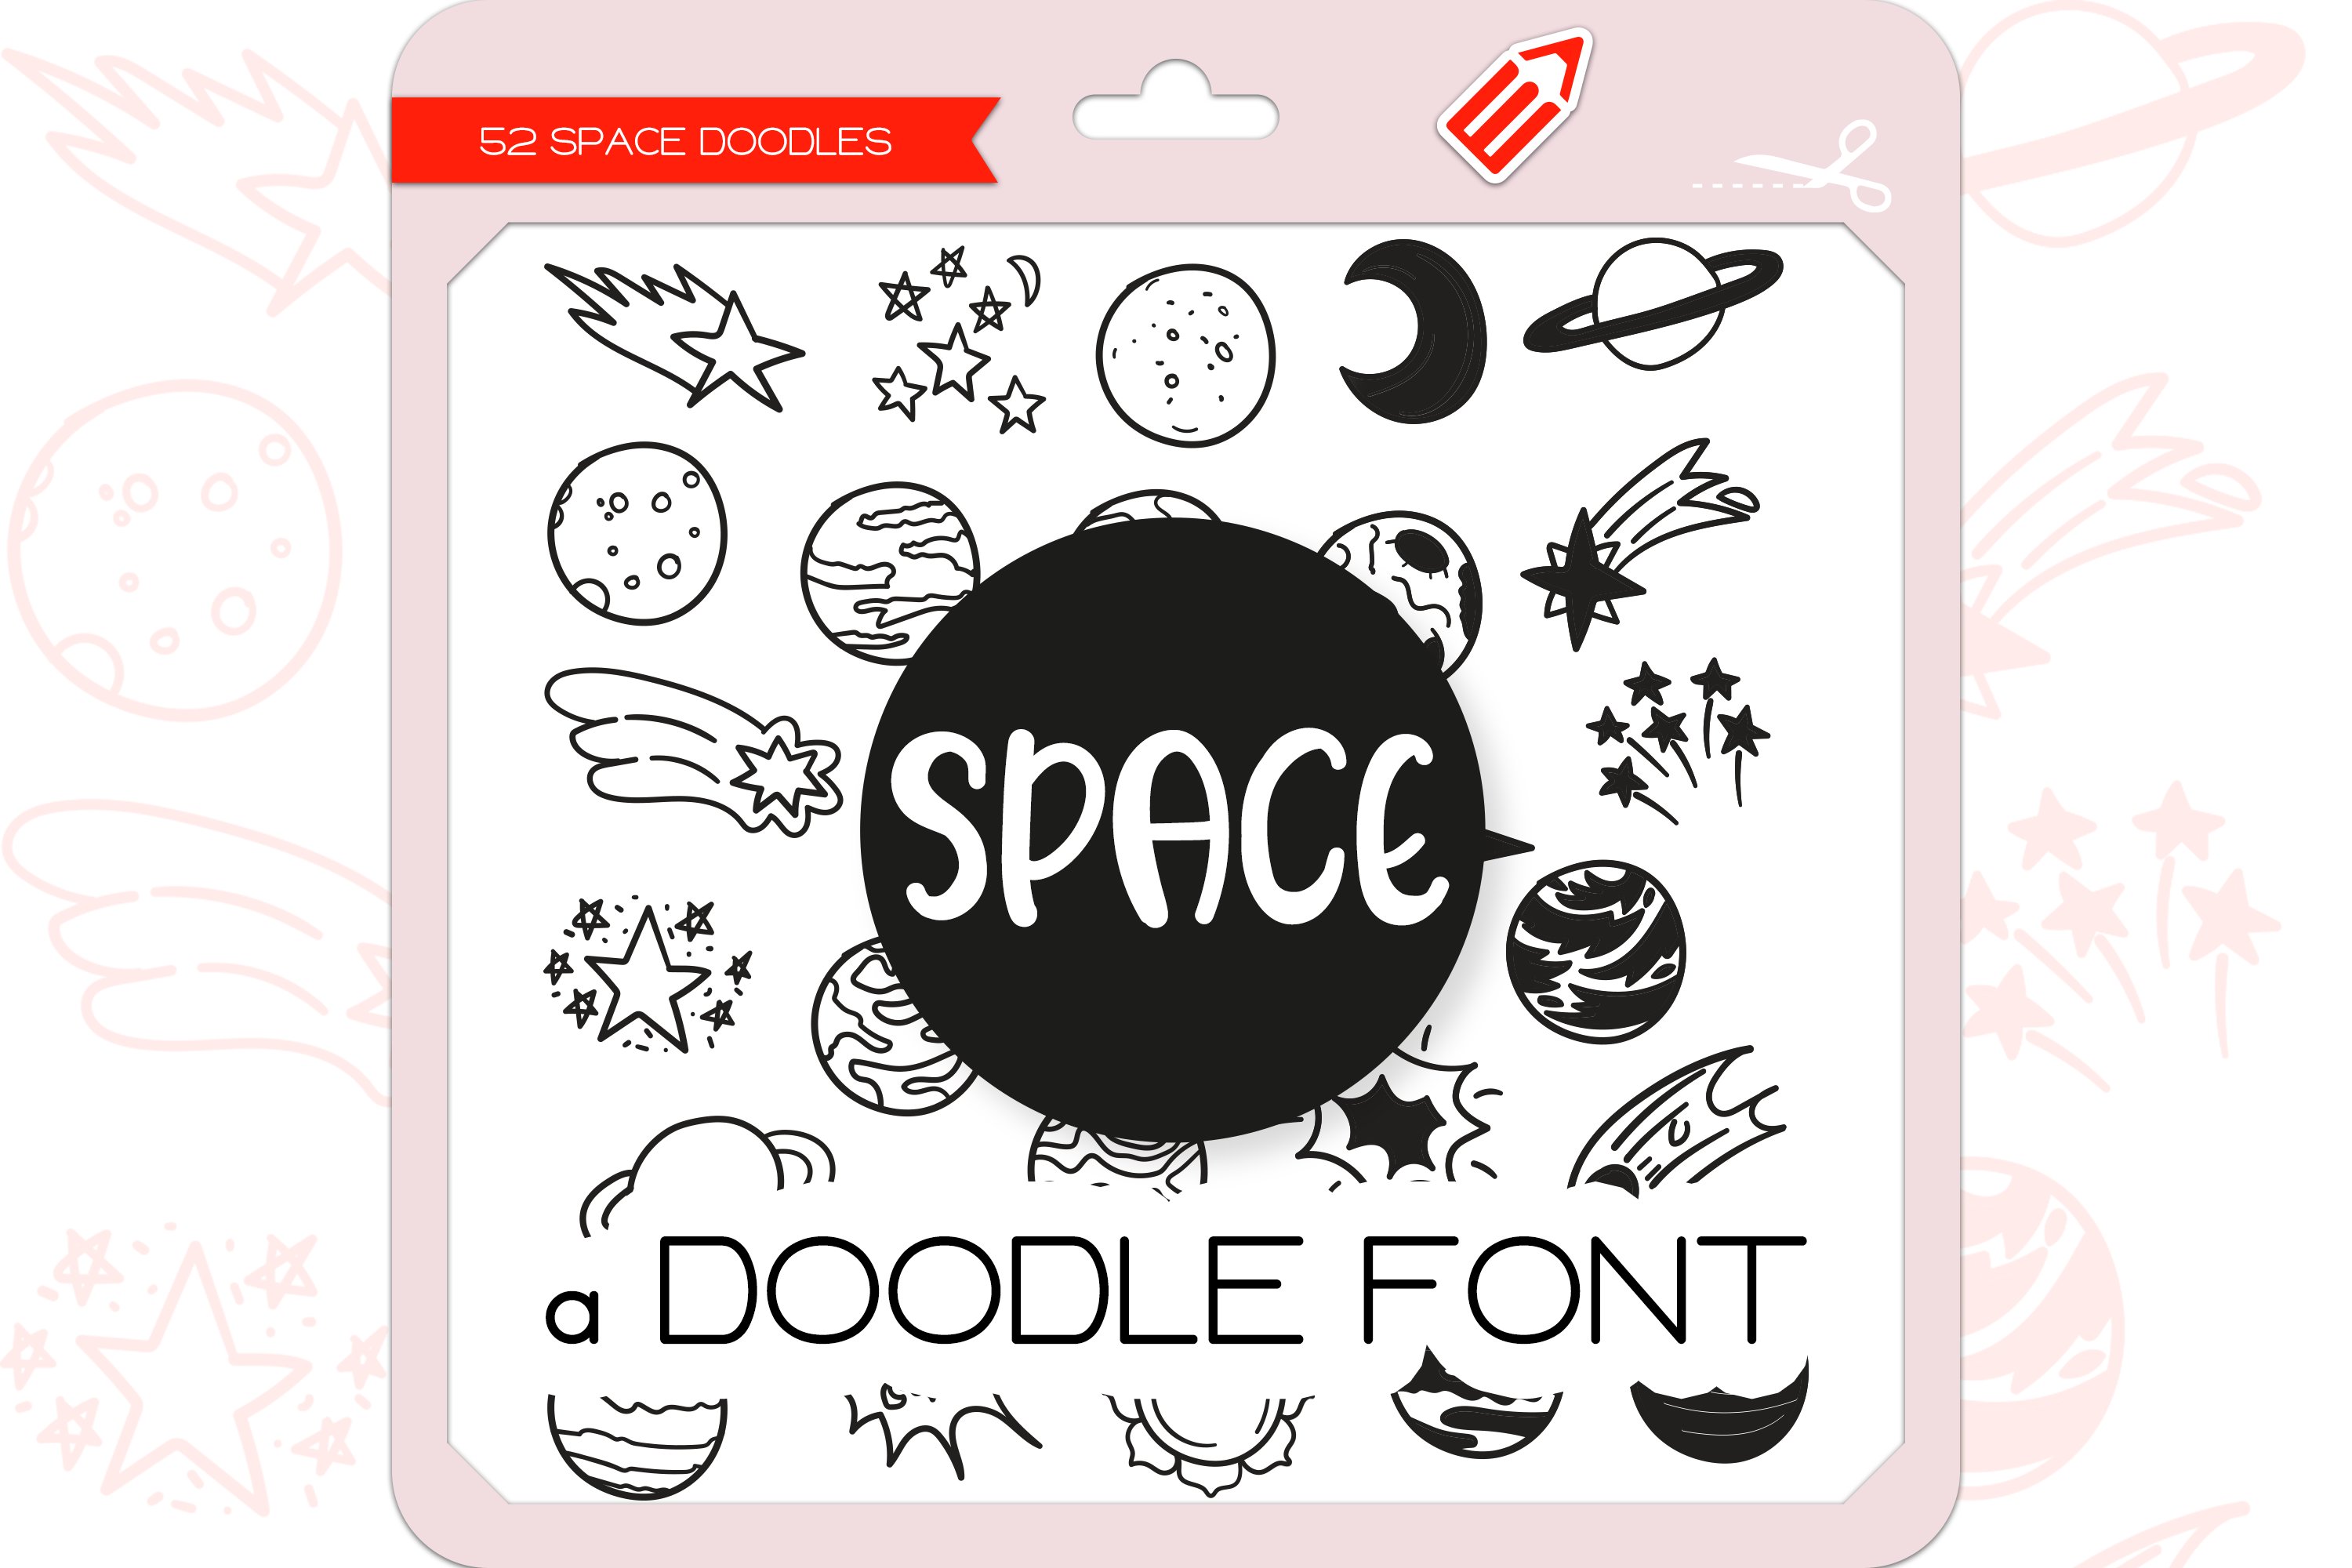 Space Doodles - Dingbats Font cover image.